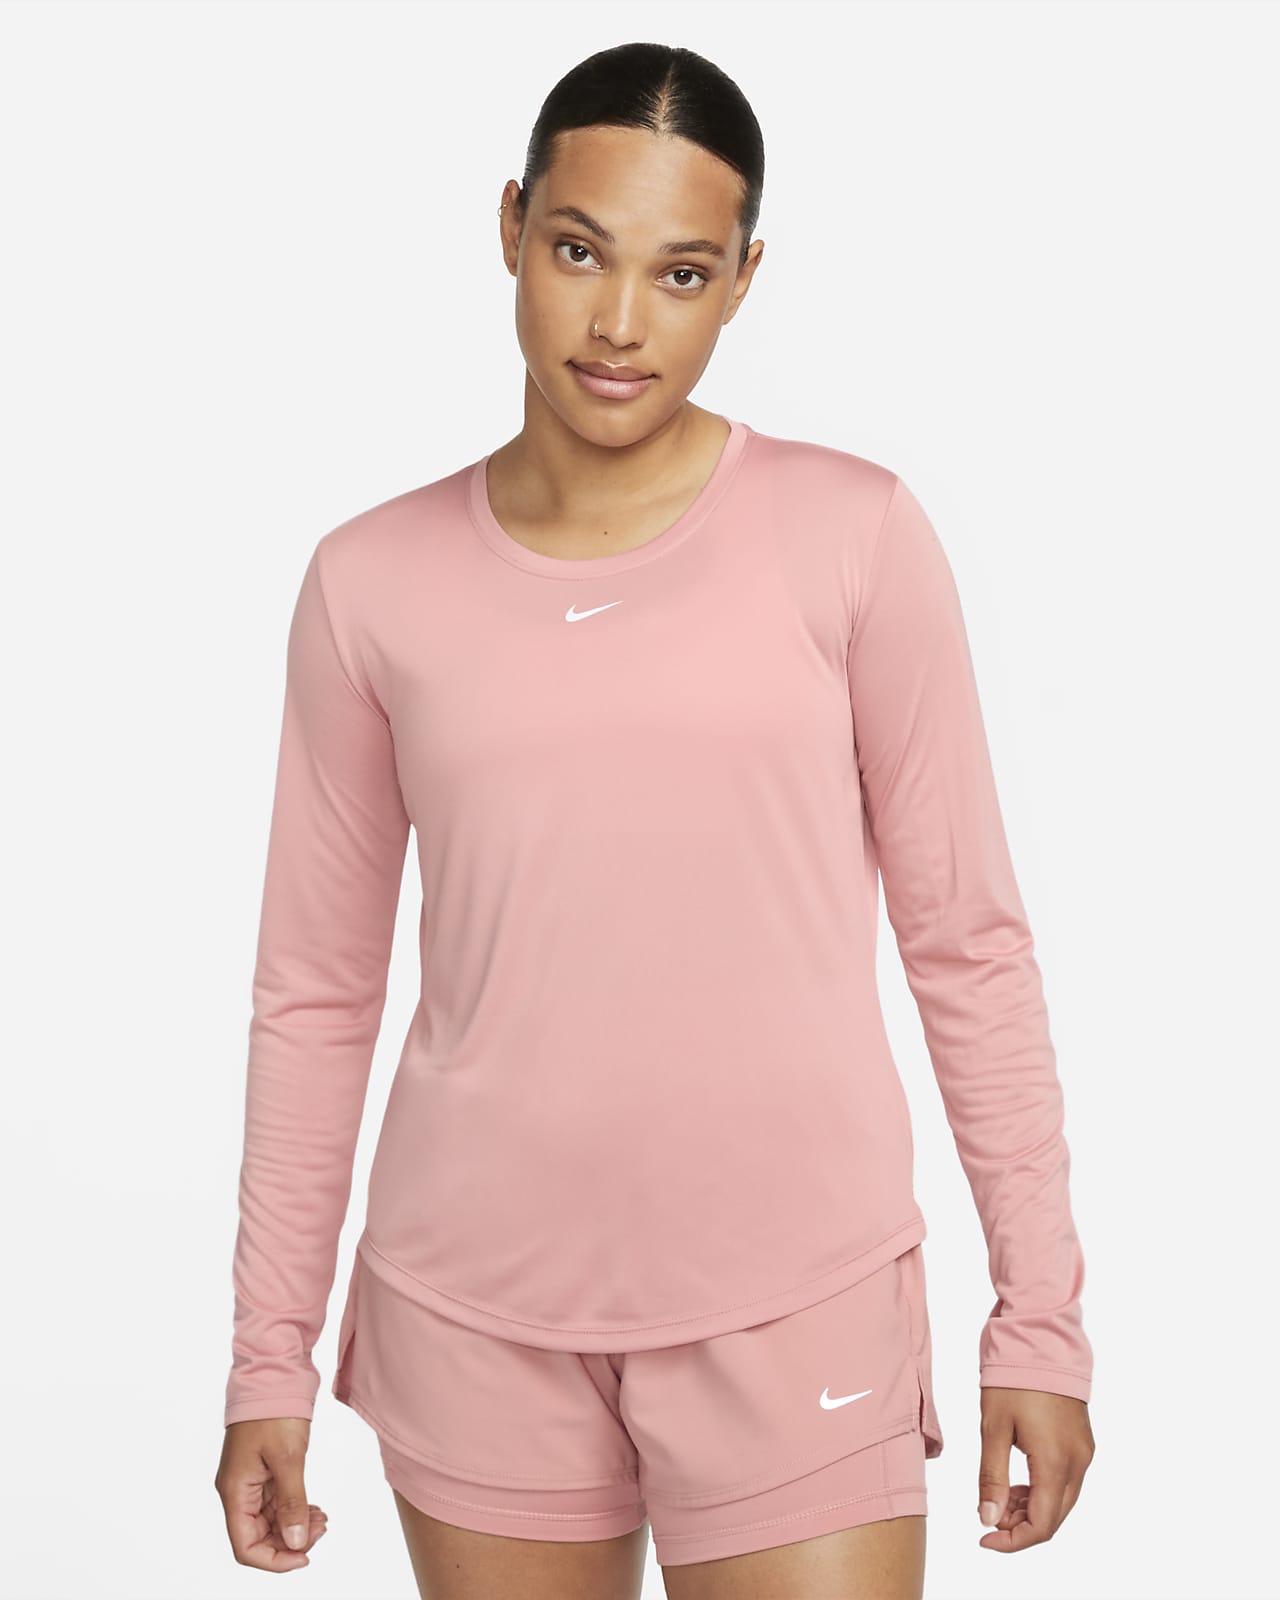 Nike Dri-FIT One 女款標準剪裁長袖上衣